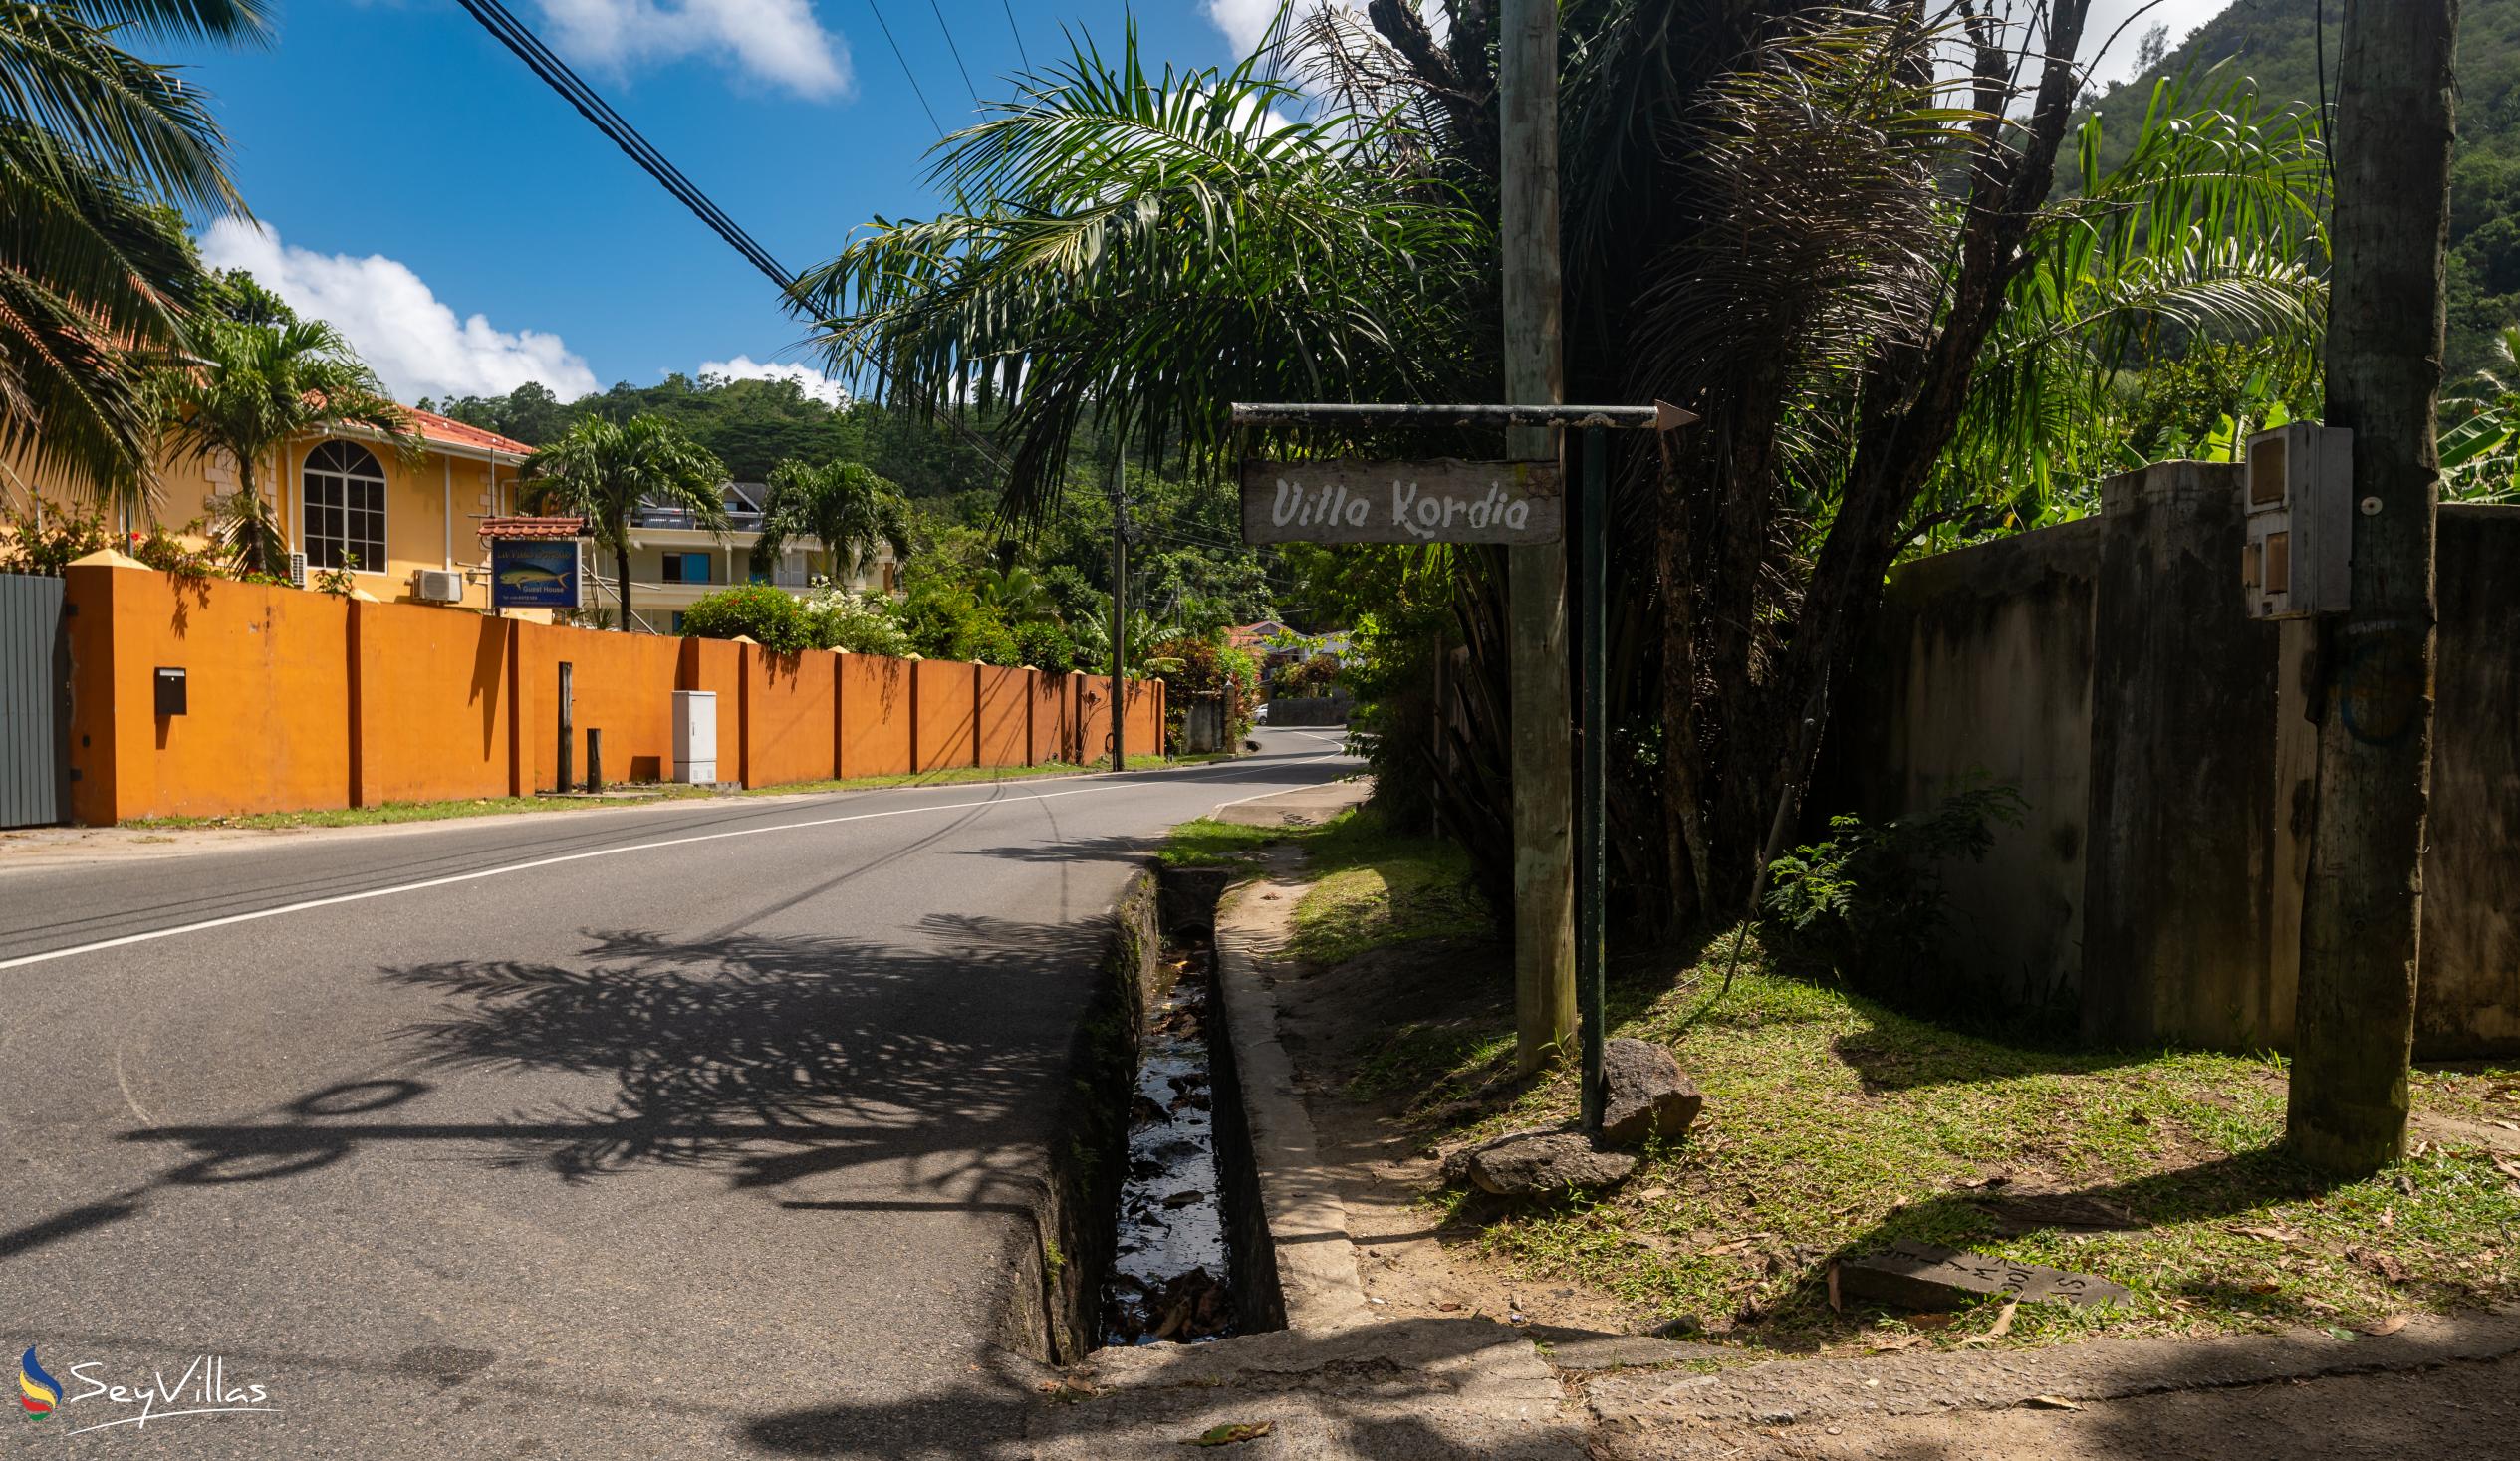 Foto 37: Villa Kordia - Posizione - Mahé (Seychelles)